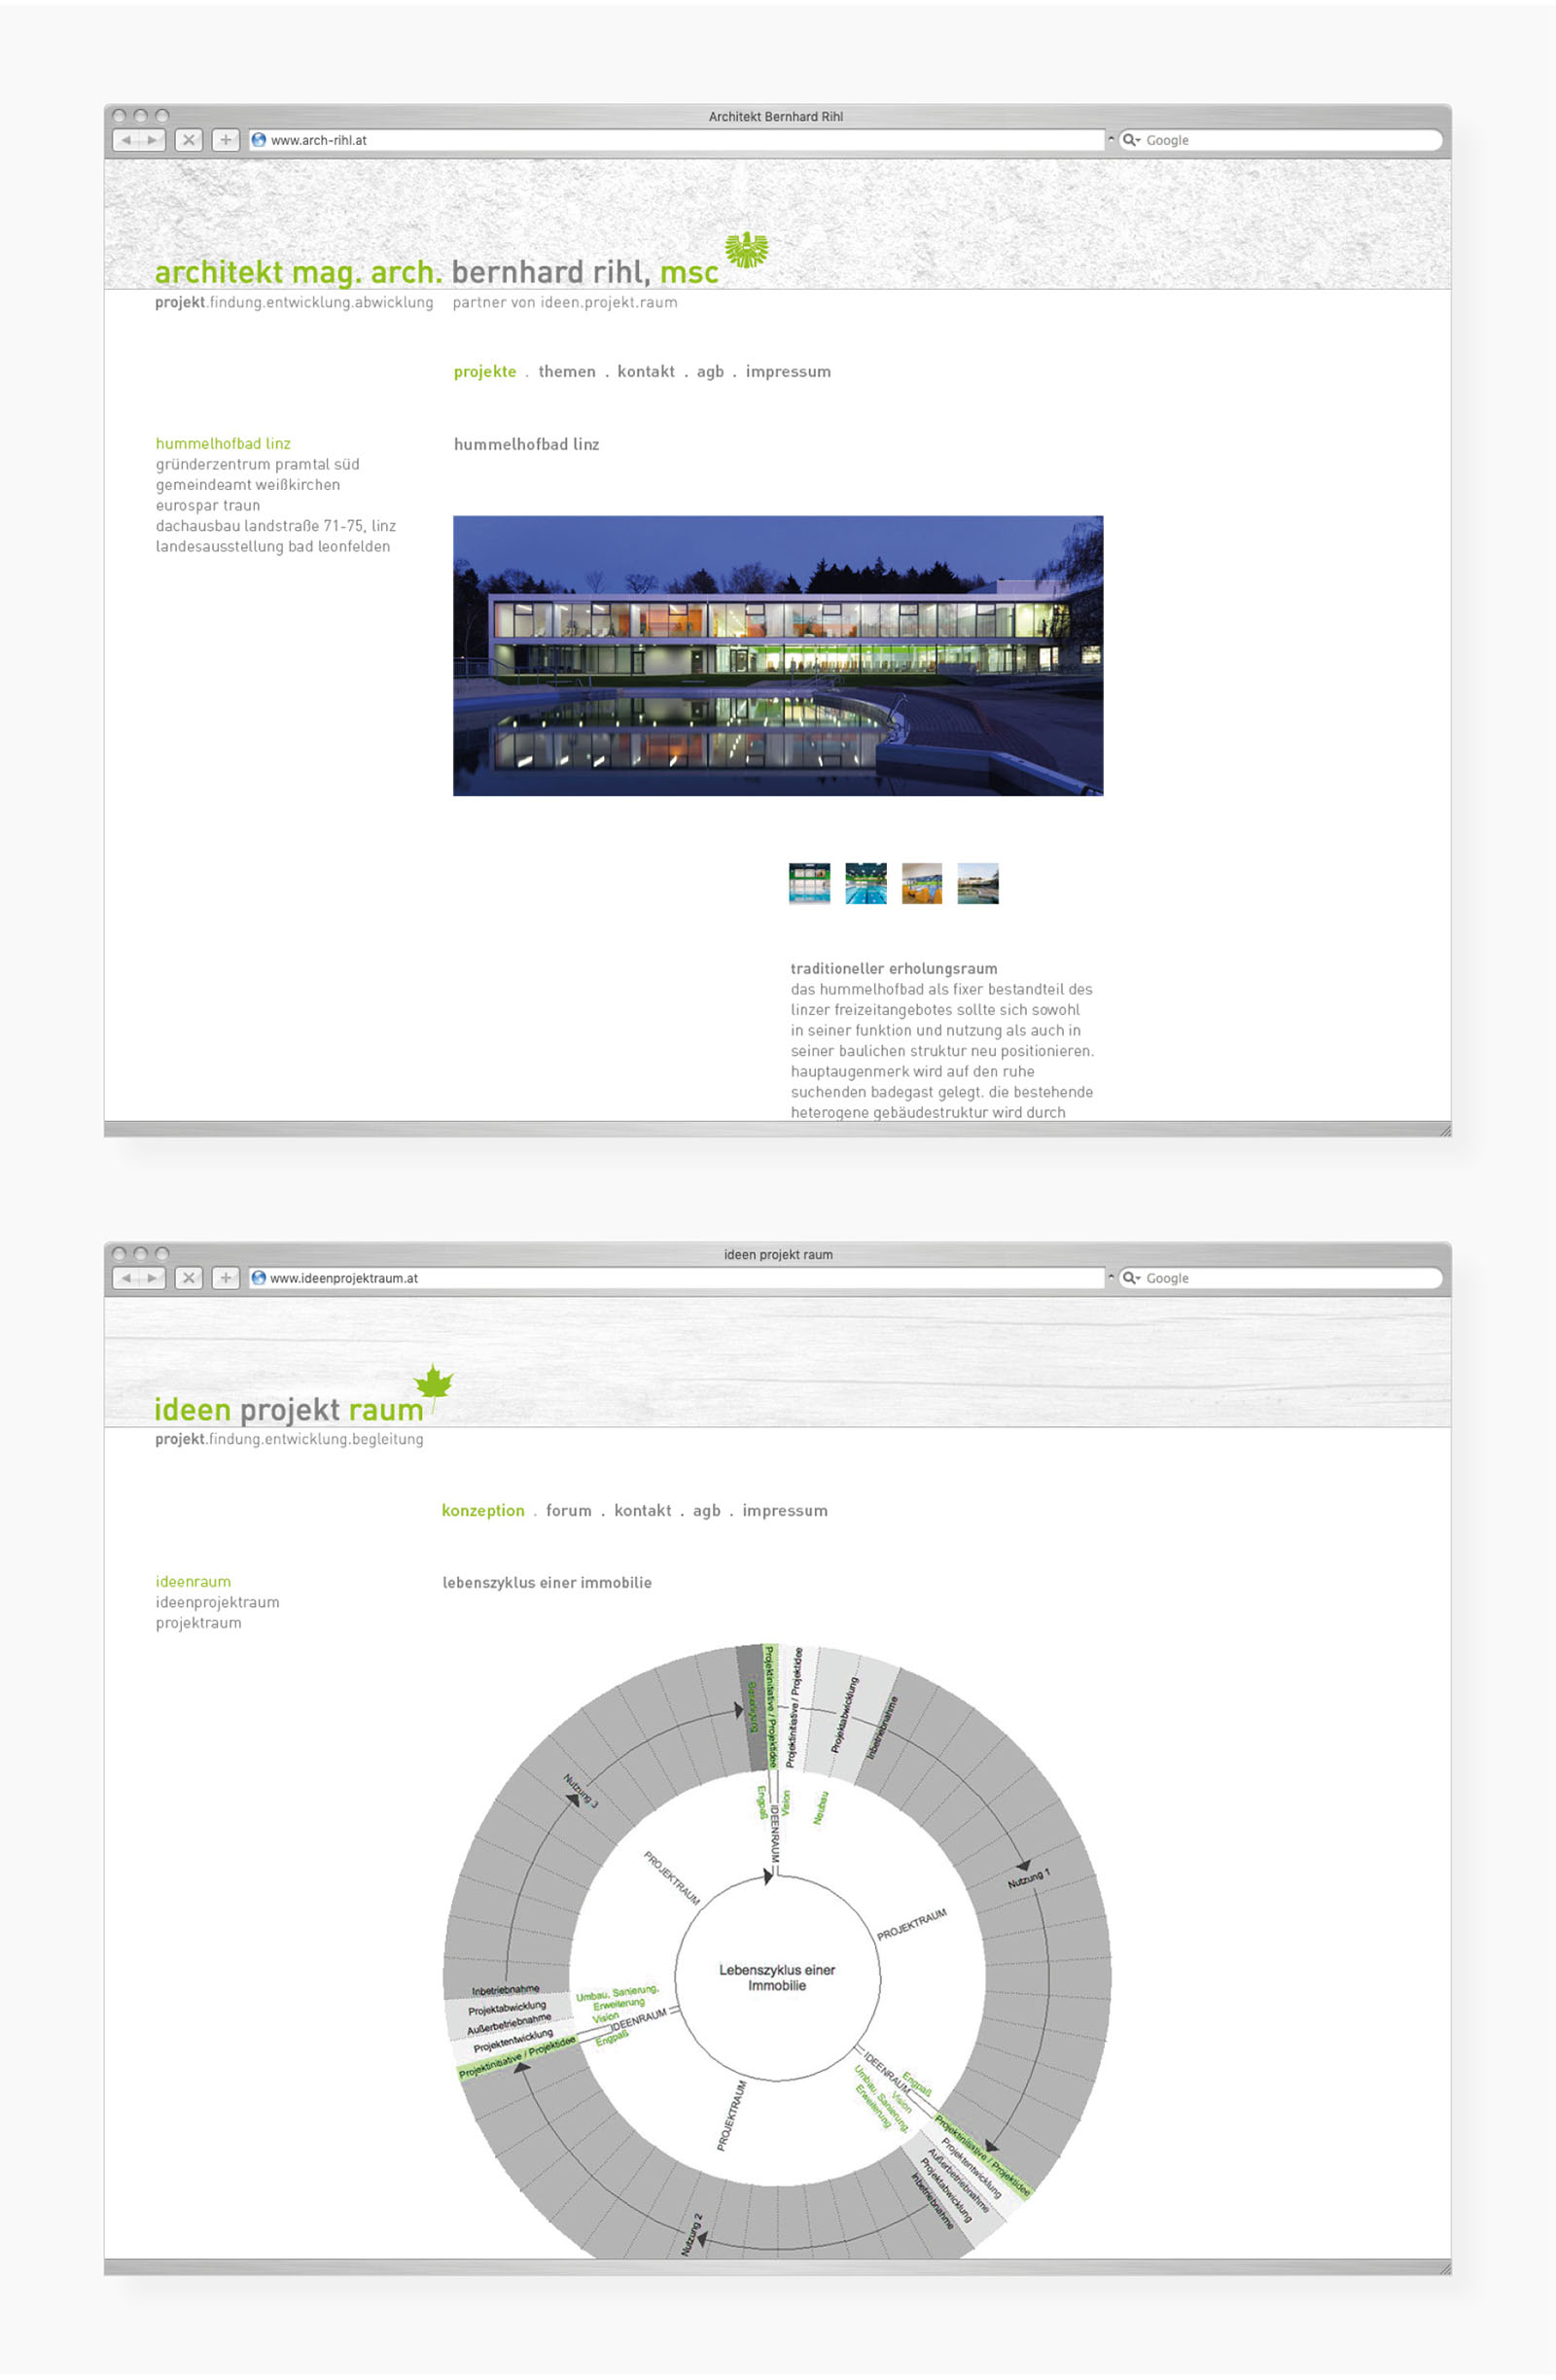 Jeweils ein Screen der Websites von Architekt Berhard Rihl und Ideen Projekt Raum